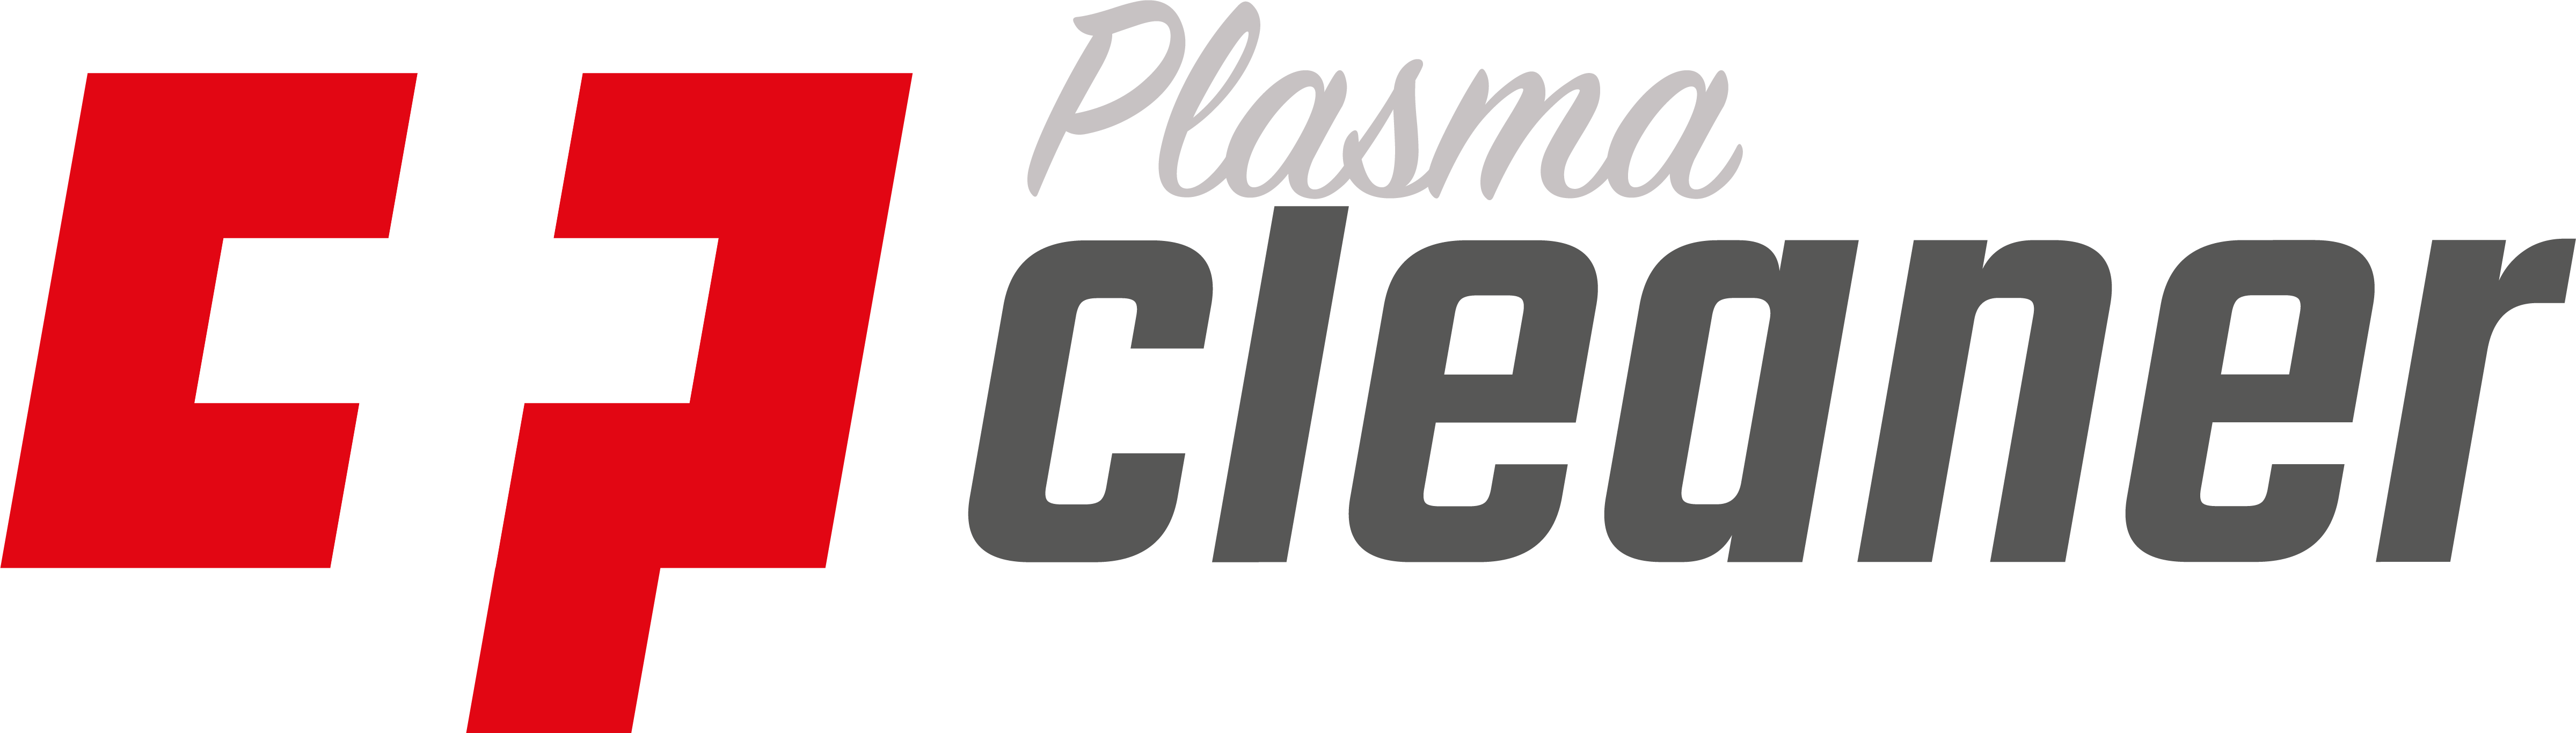 CP plasma cleaner